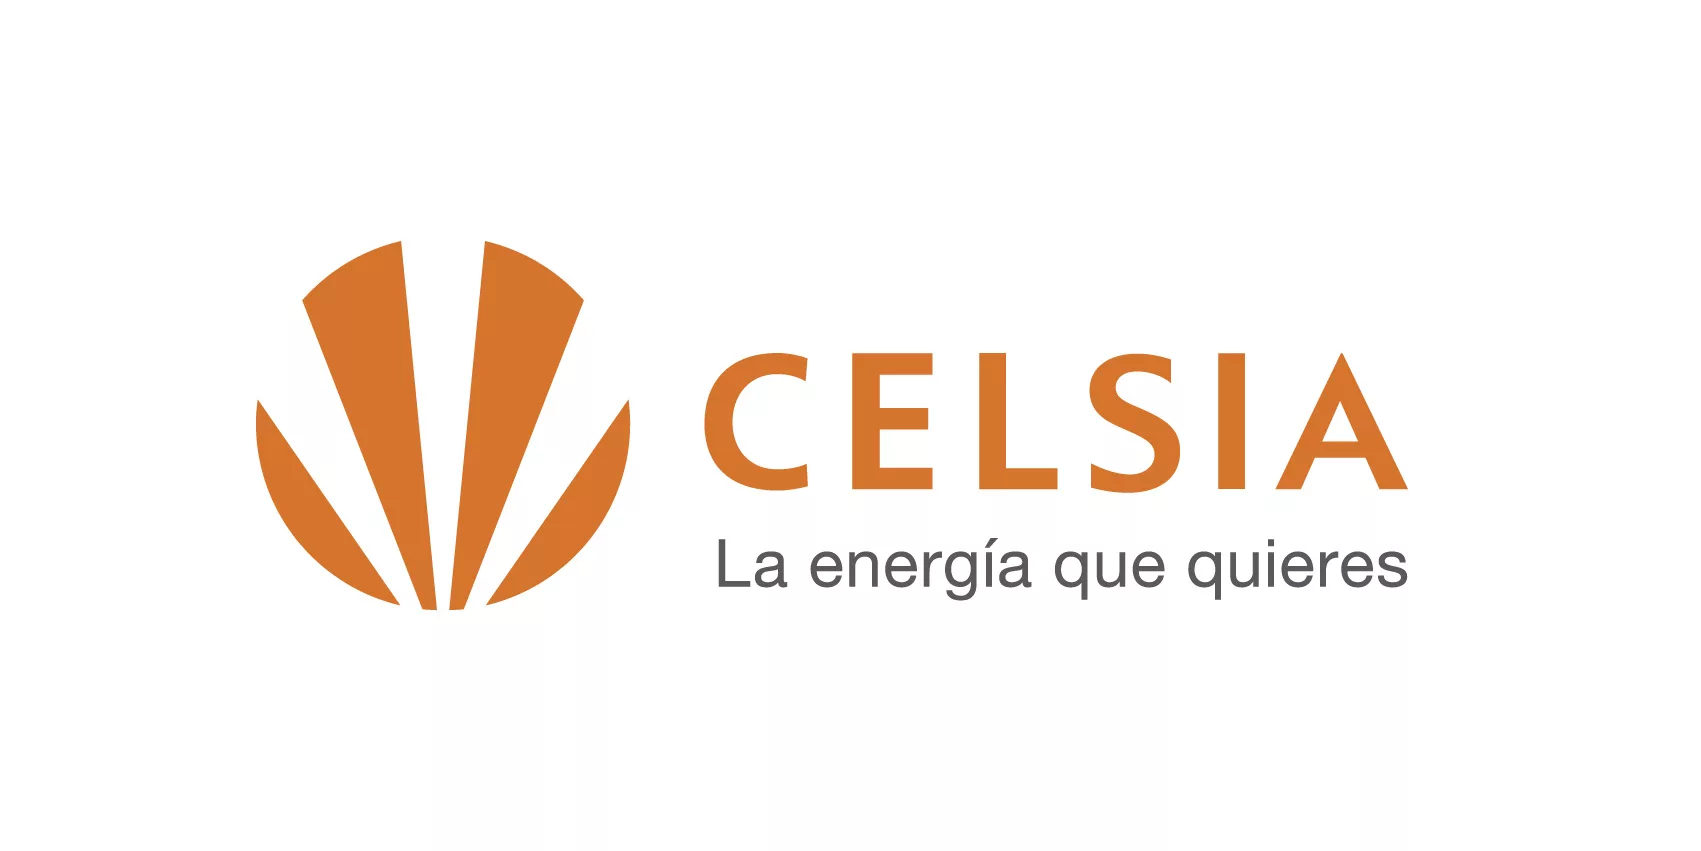 Información relevante sobre proyectos eólicos en La Guajira